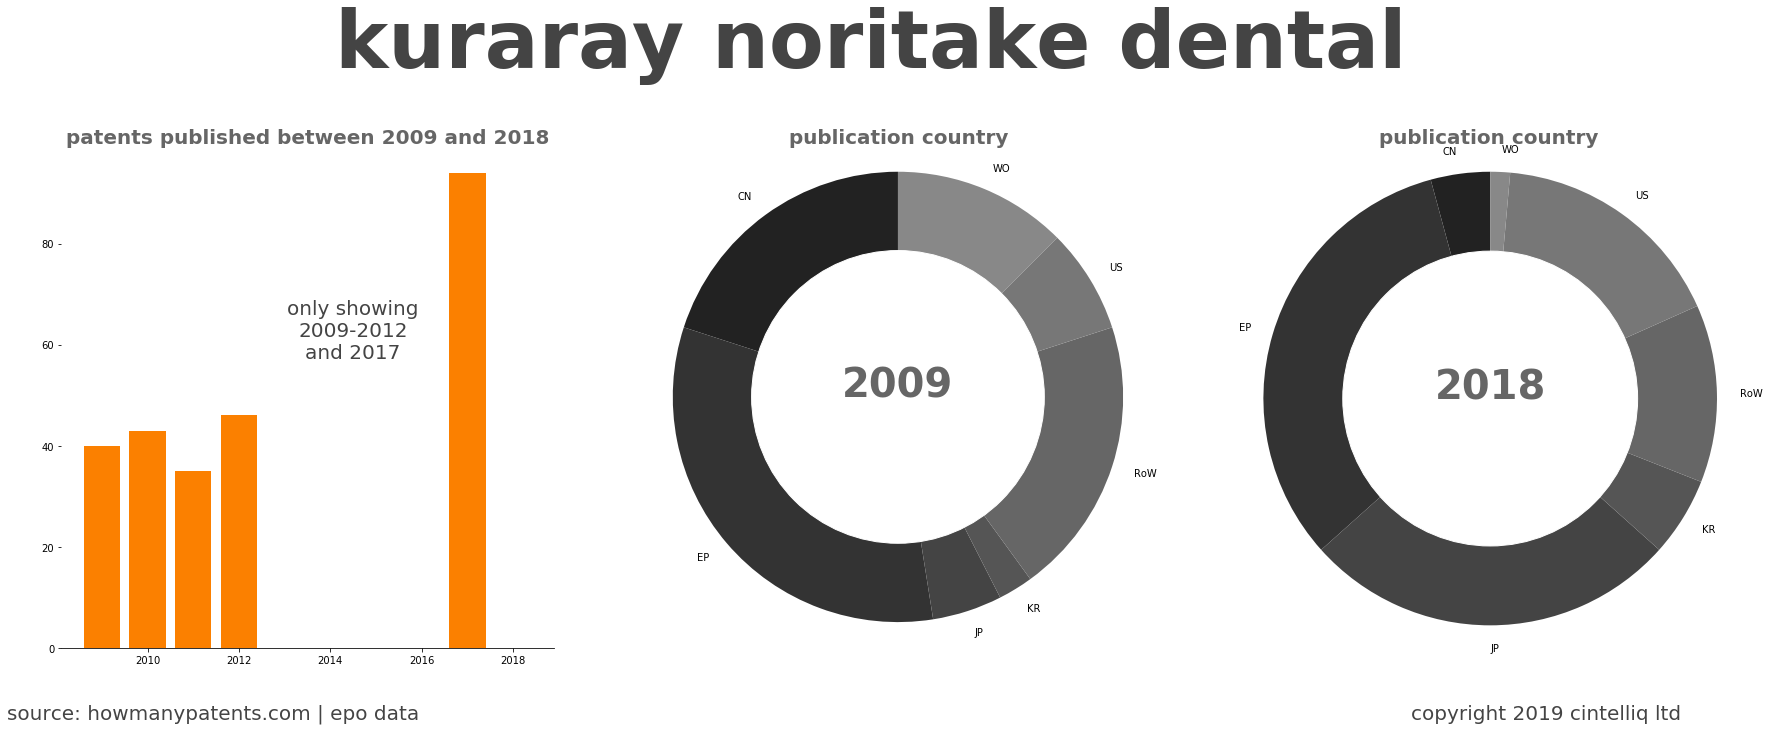 summary of patents for Kuraray Noritake Dental